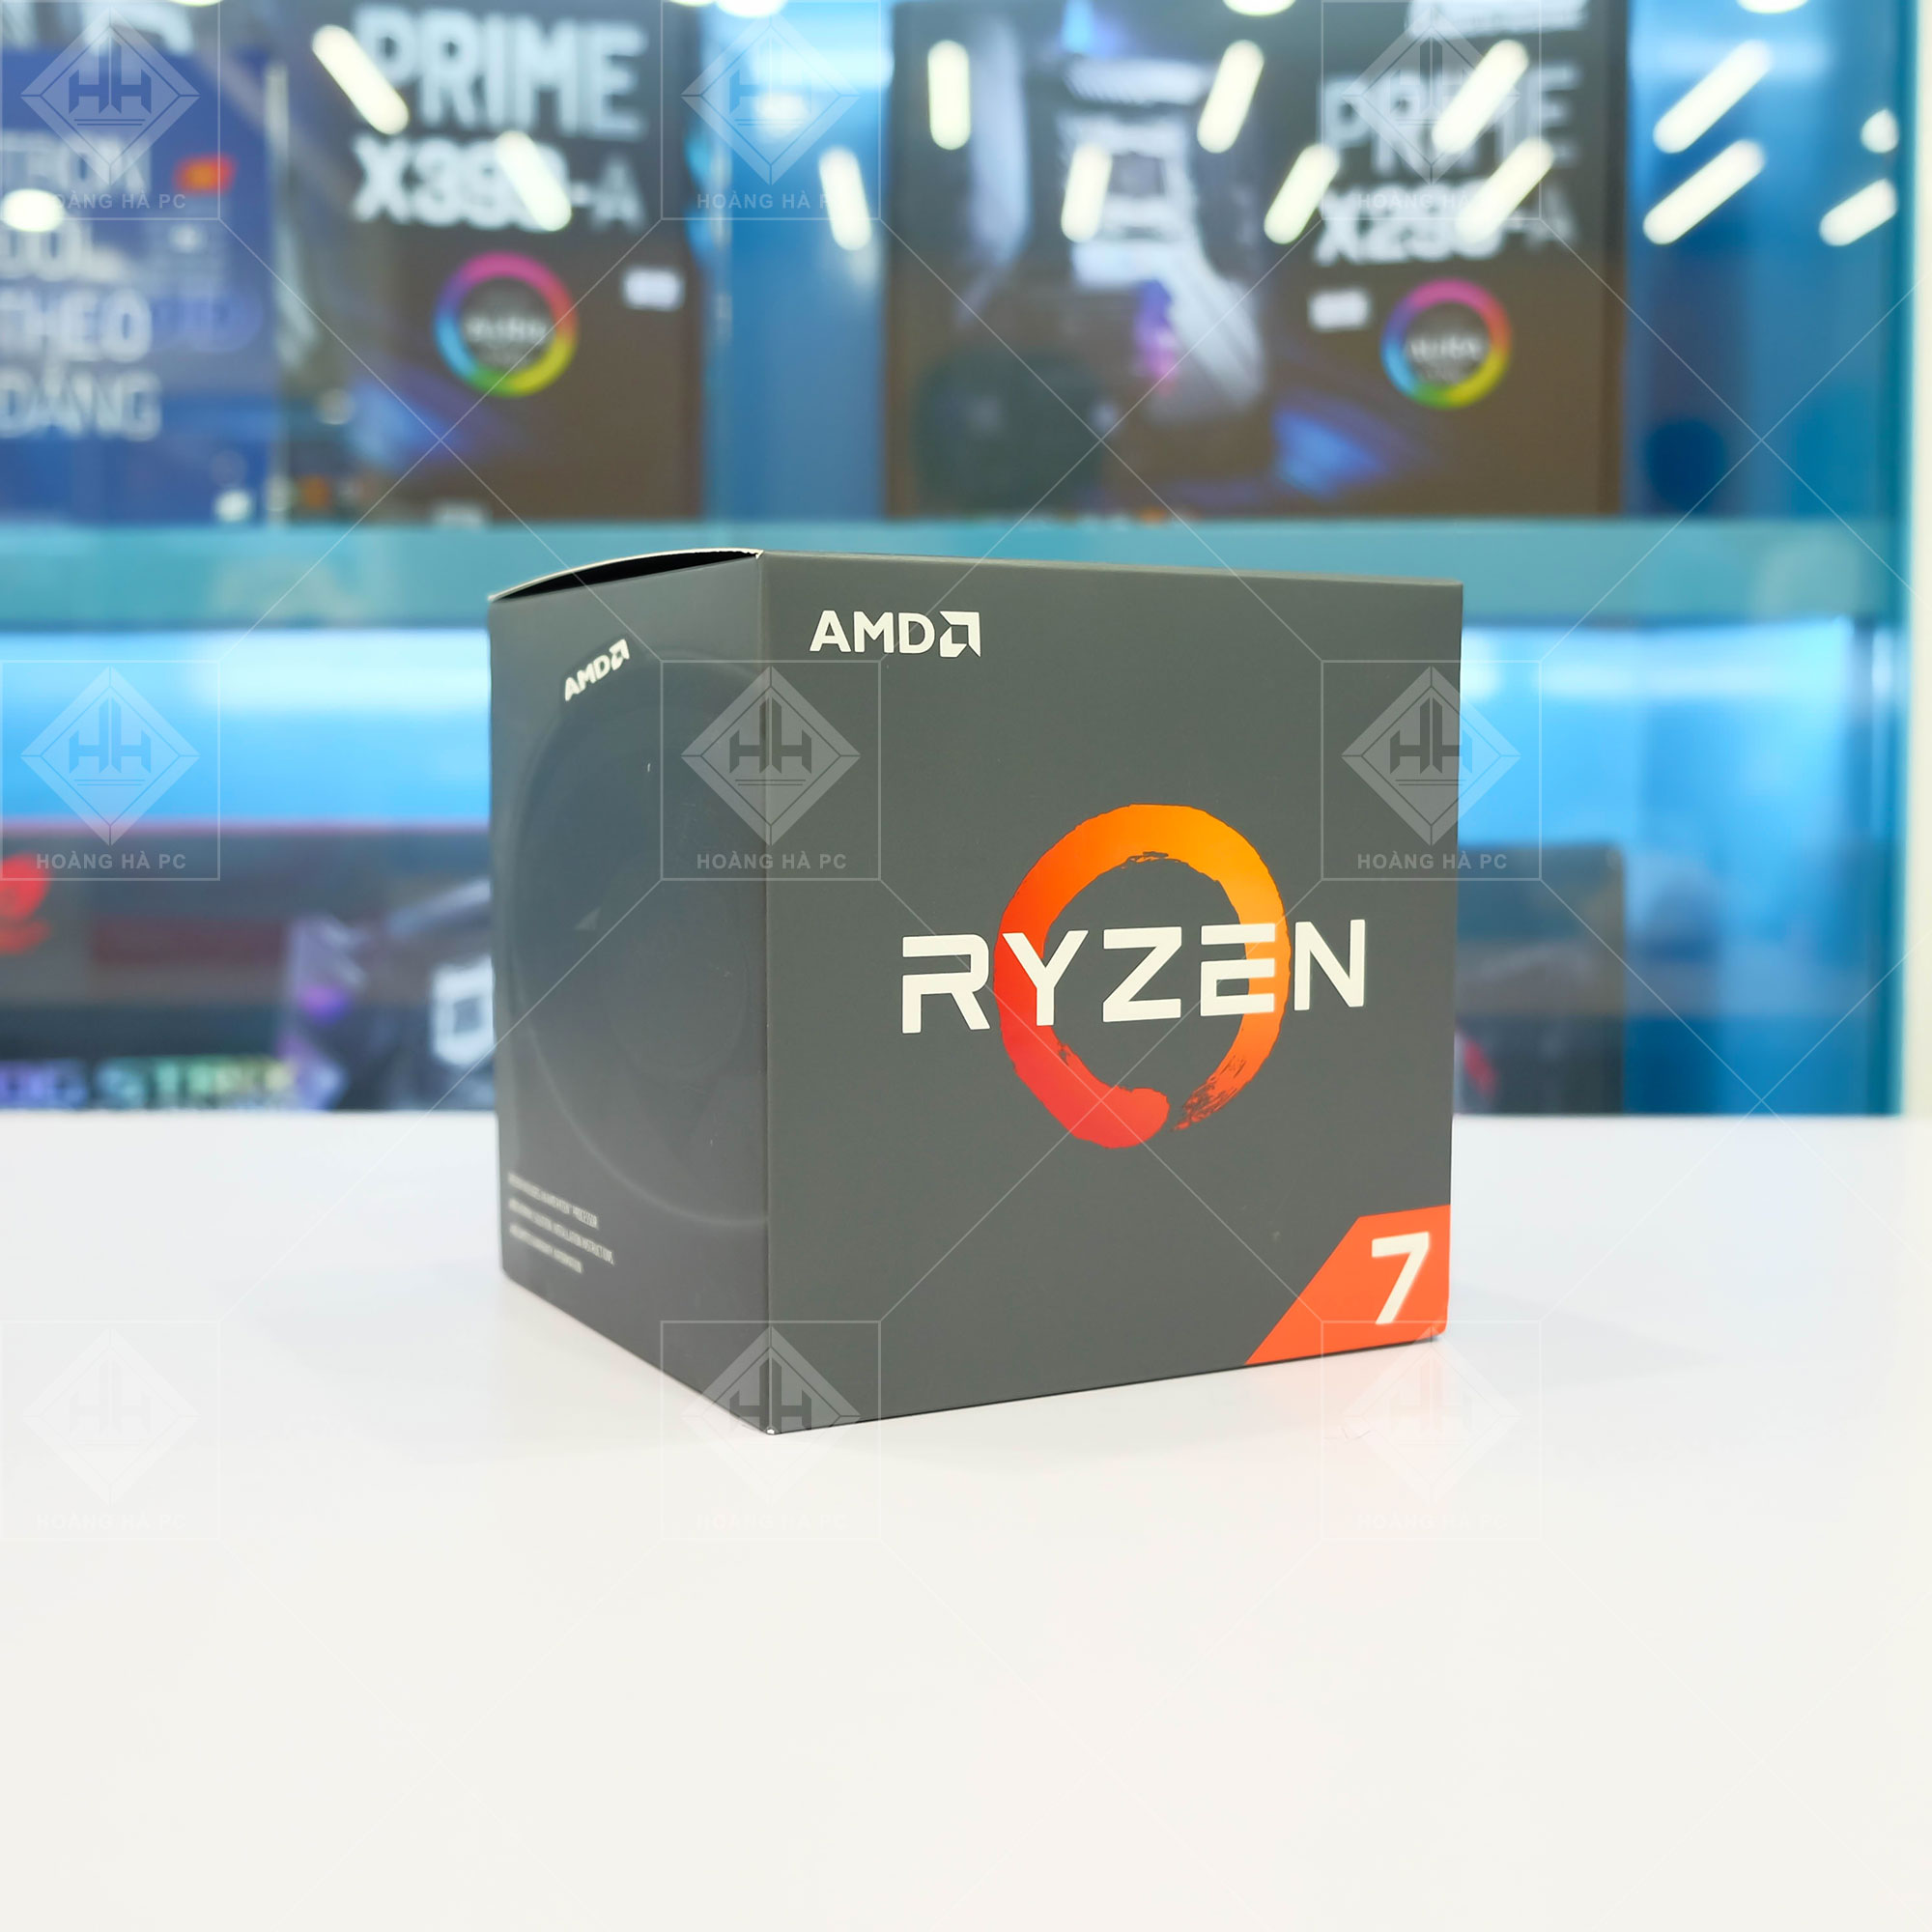 CPU AMD Ryzen 7 2700X